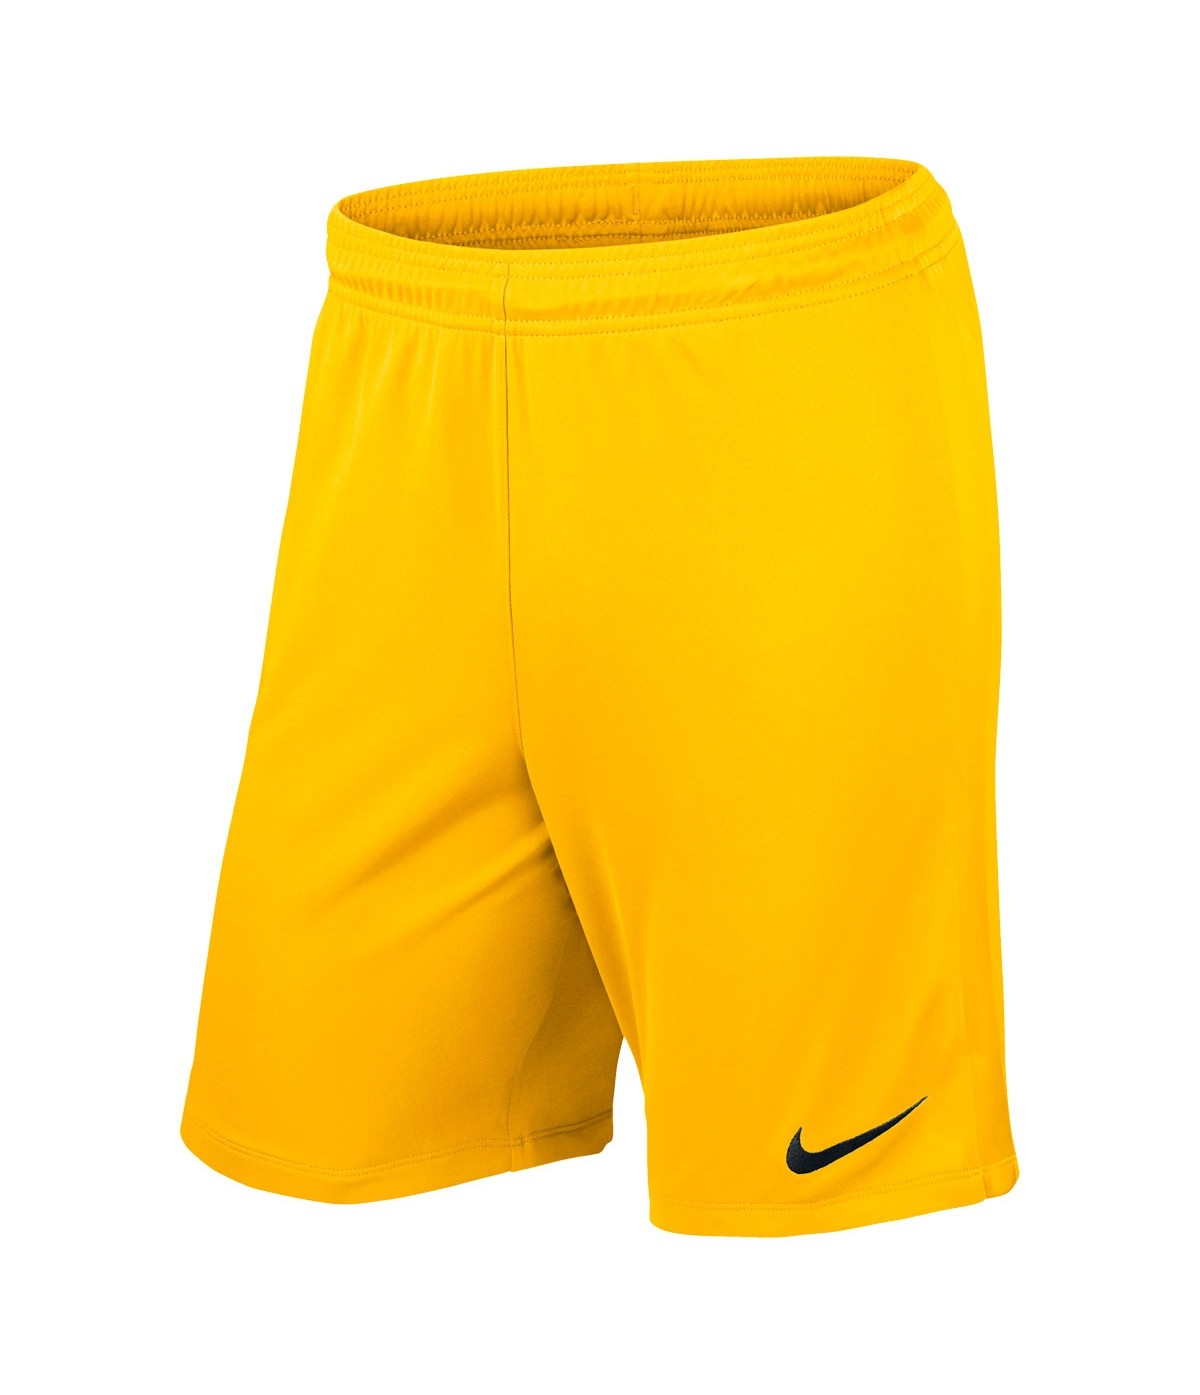 Шорты мужские Nike 725881 желтые S